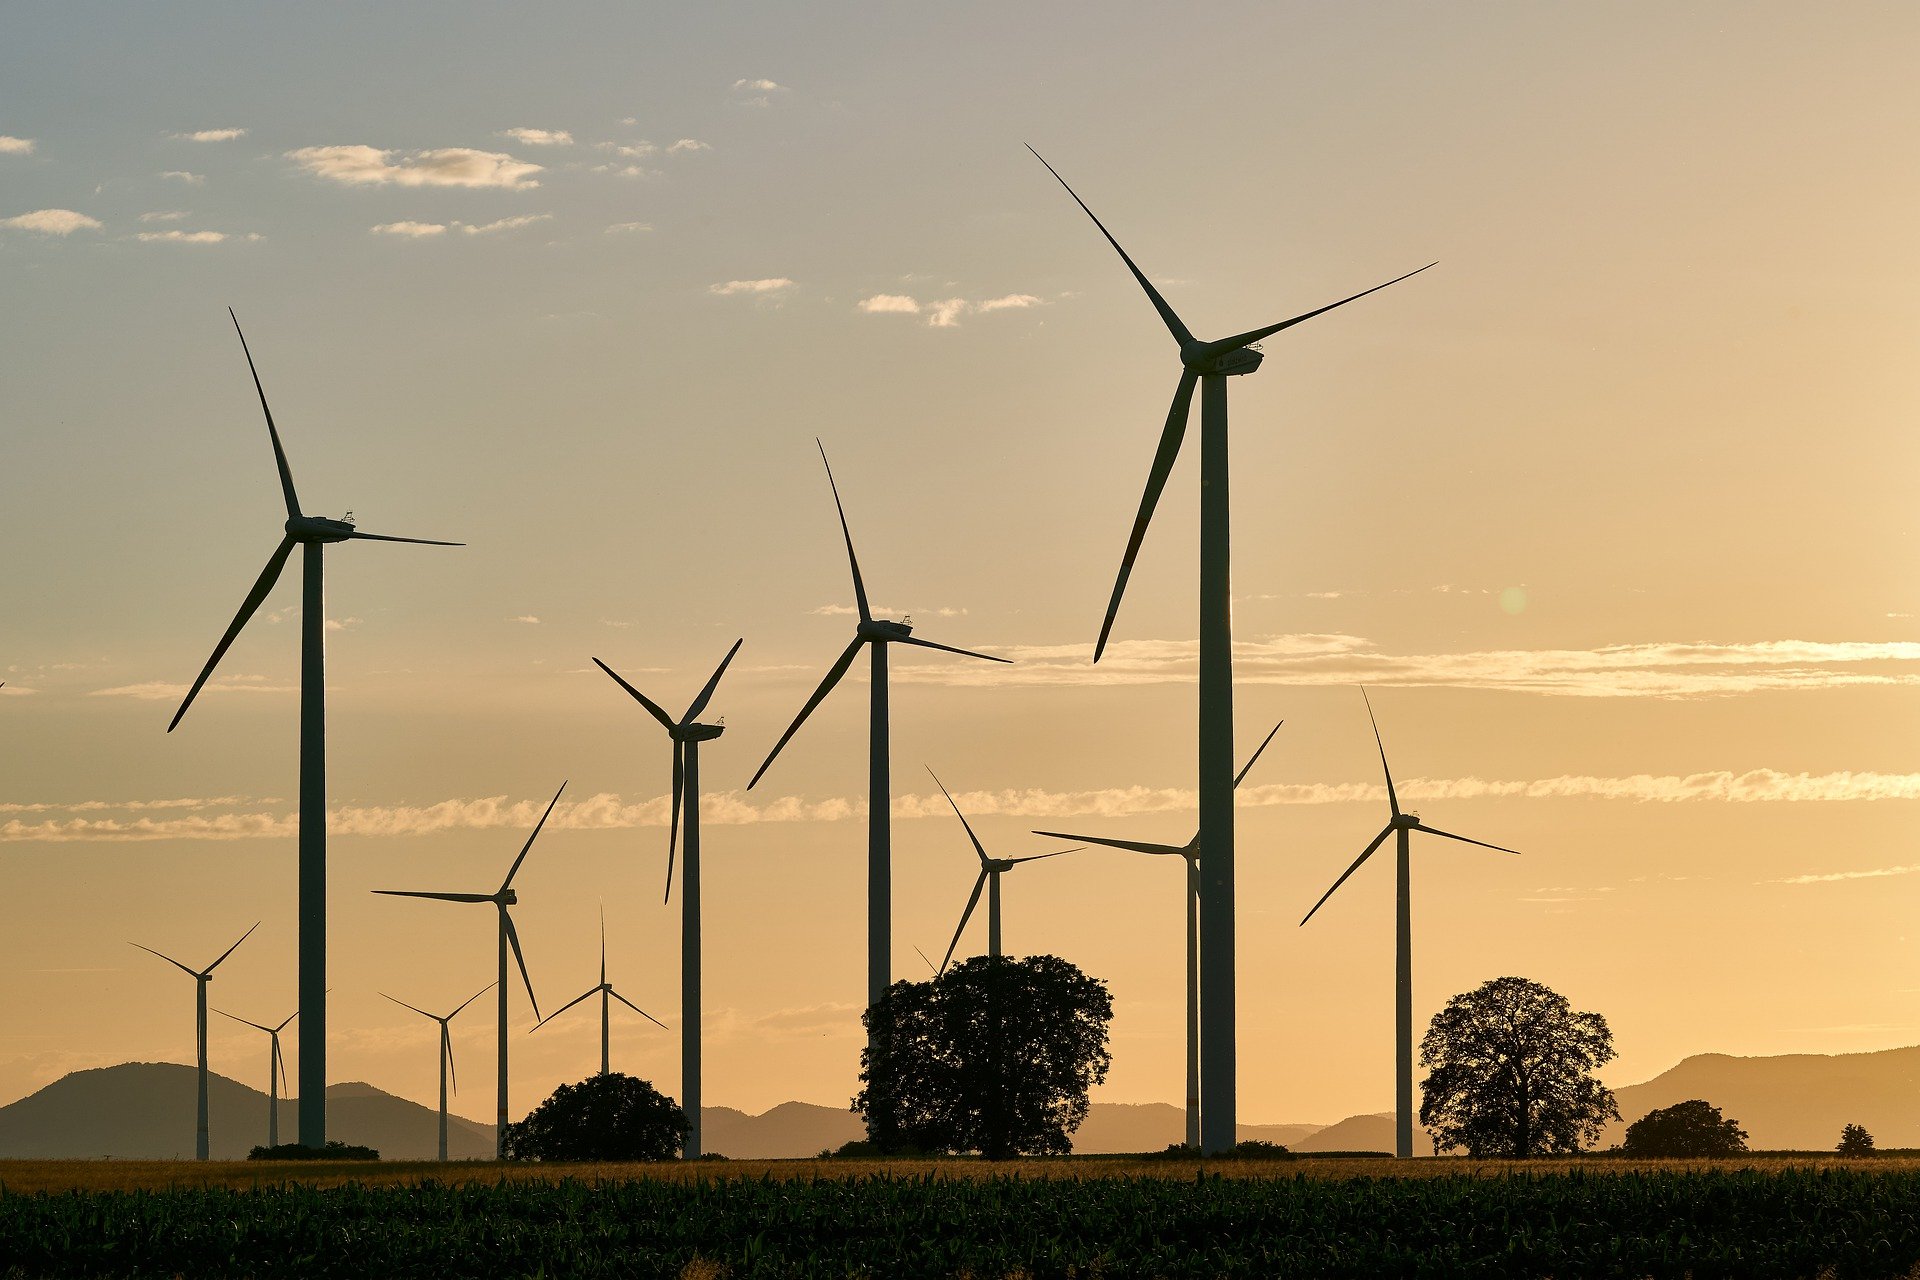 Pixabay – Renewable wind